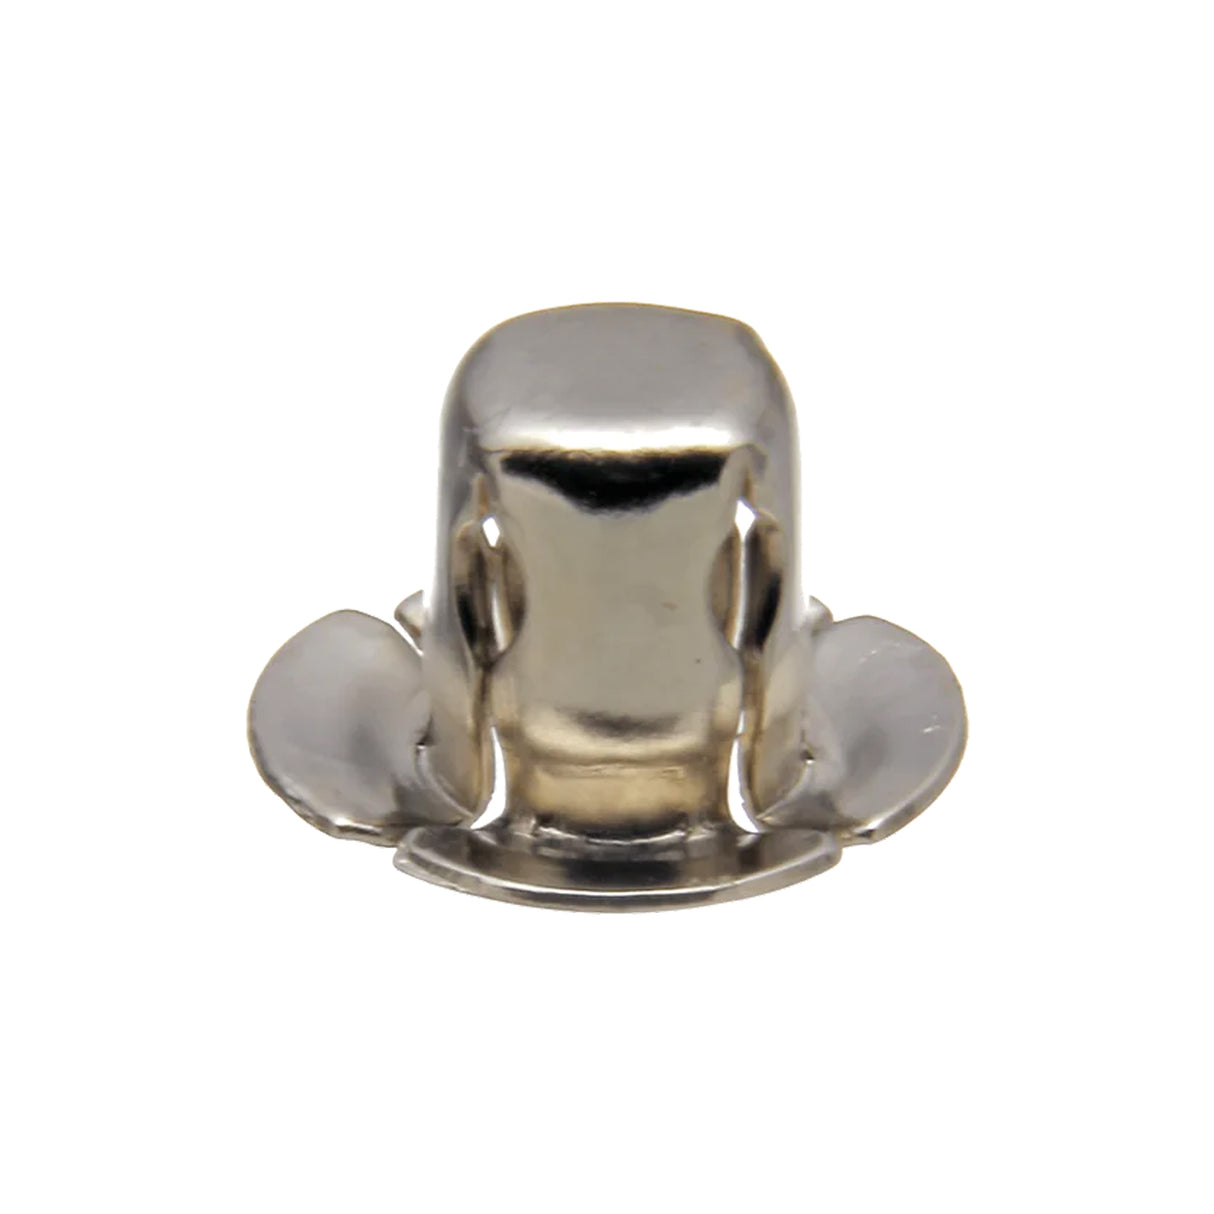 Size 21 Nickel, Segma Socket, Solid Brass, #21201-N